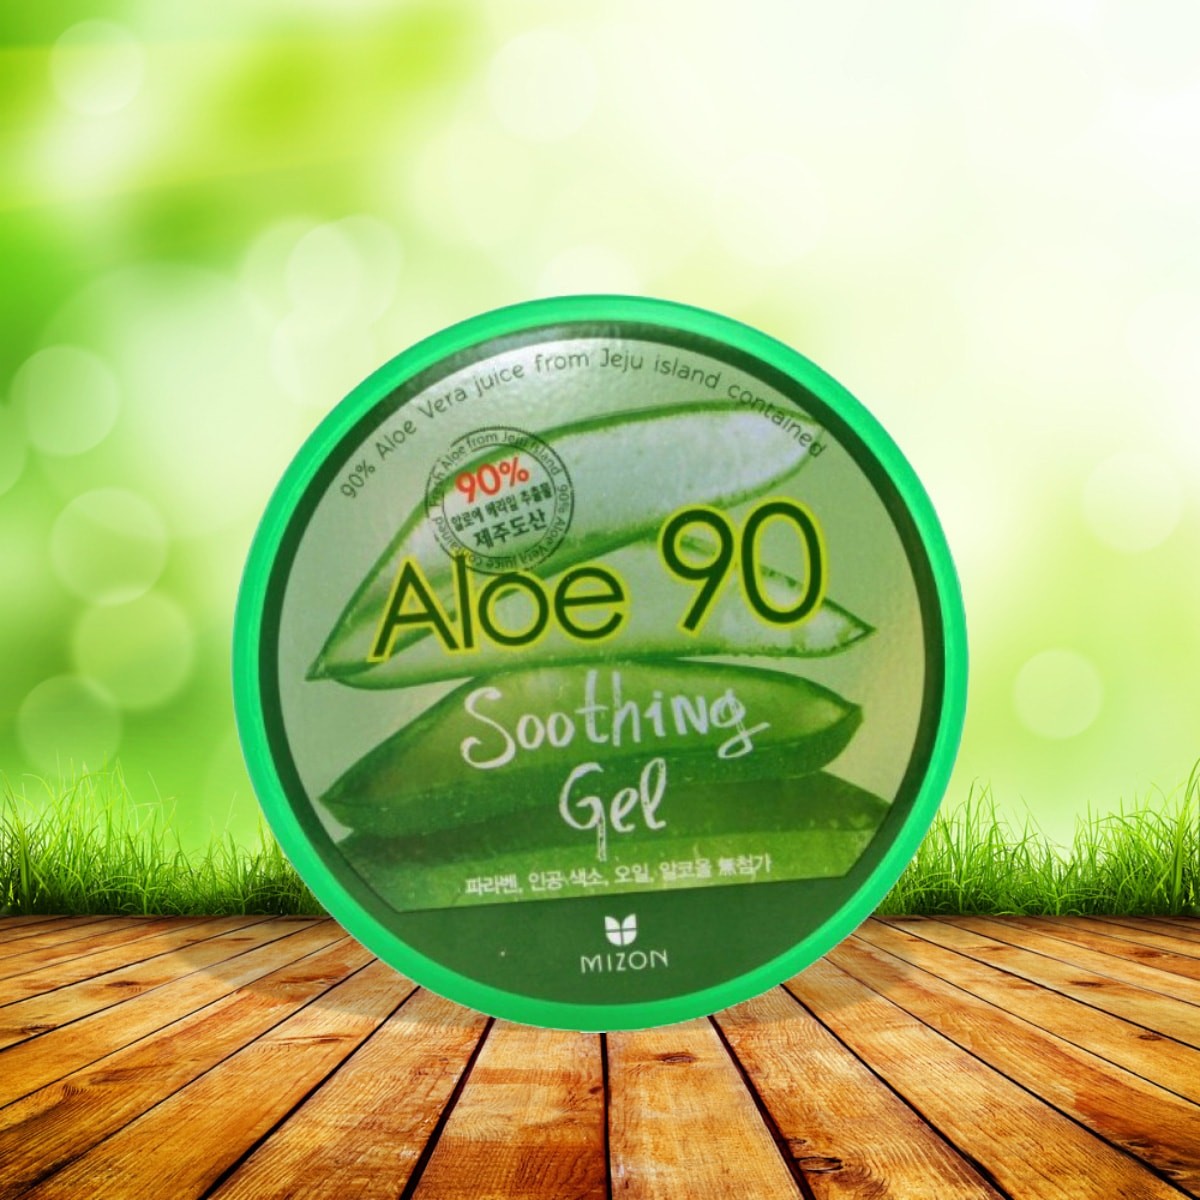 Aloe 90 Soothing Gel [Mizon]